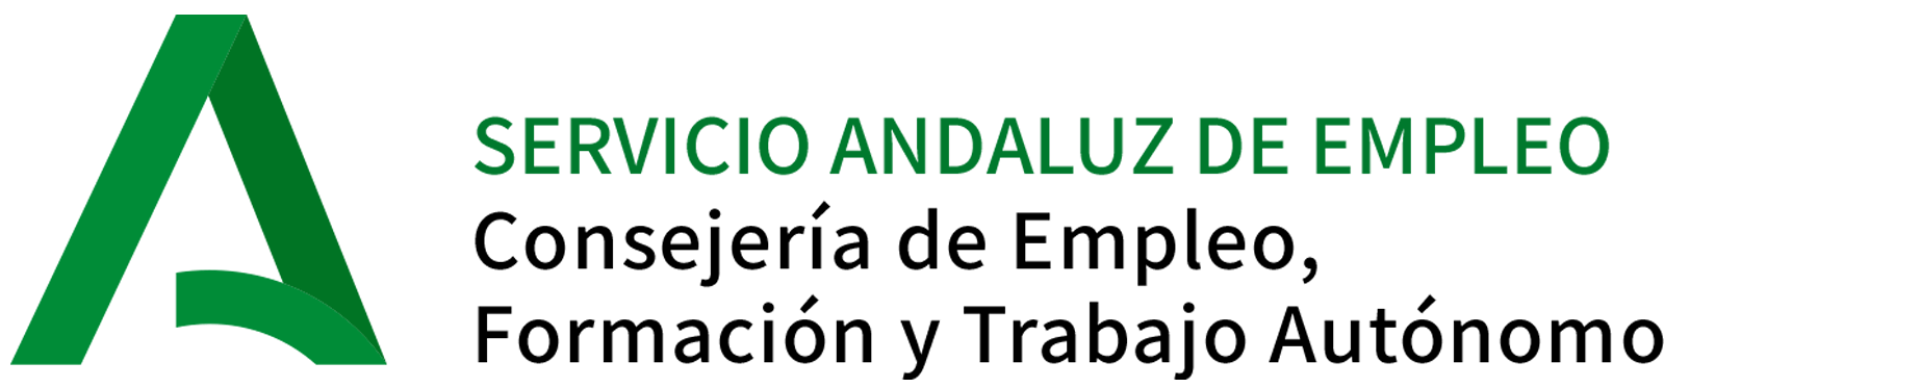 Andalucía Orienta